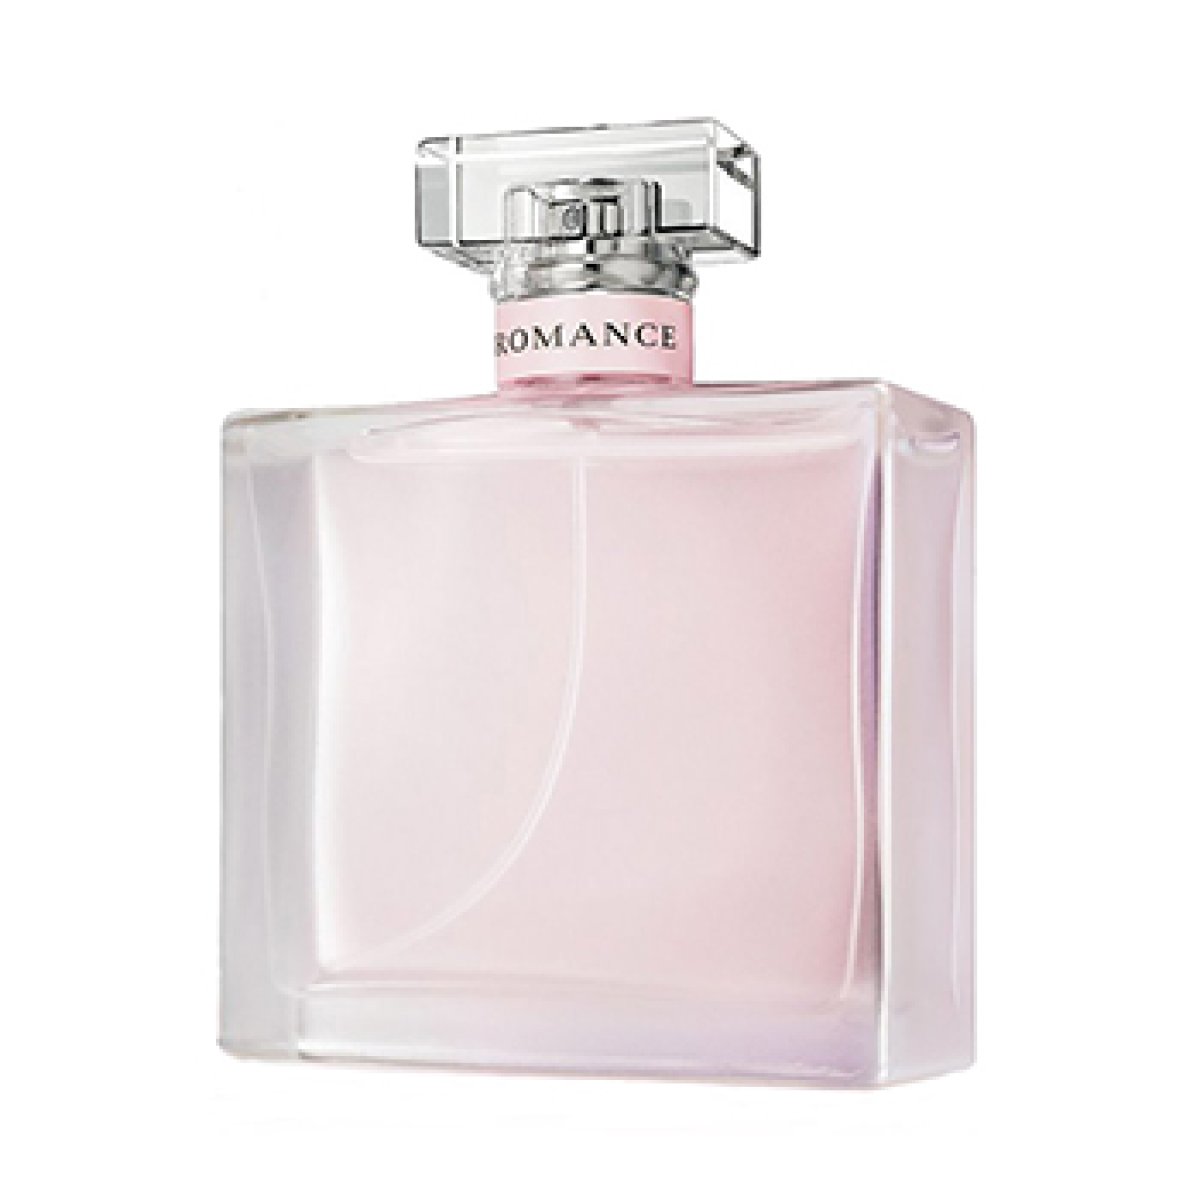 https://www.parfum.hu/uploads/cache/fb_og_image/uploads/media/8/a/2/8/romance-eau-fraiche-ralph-lauren-eau-de-parfum-noi-parfum-1.jpg